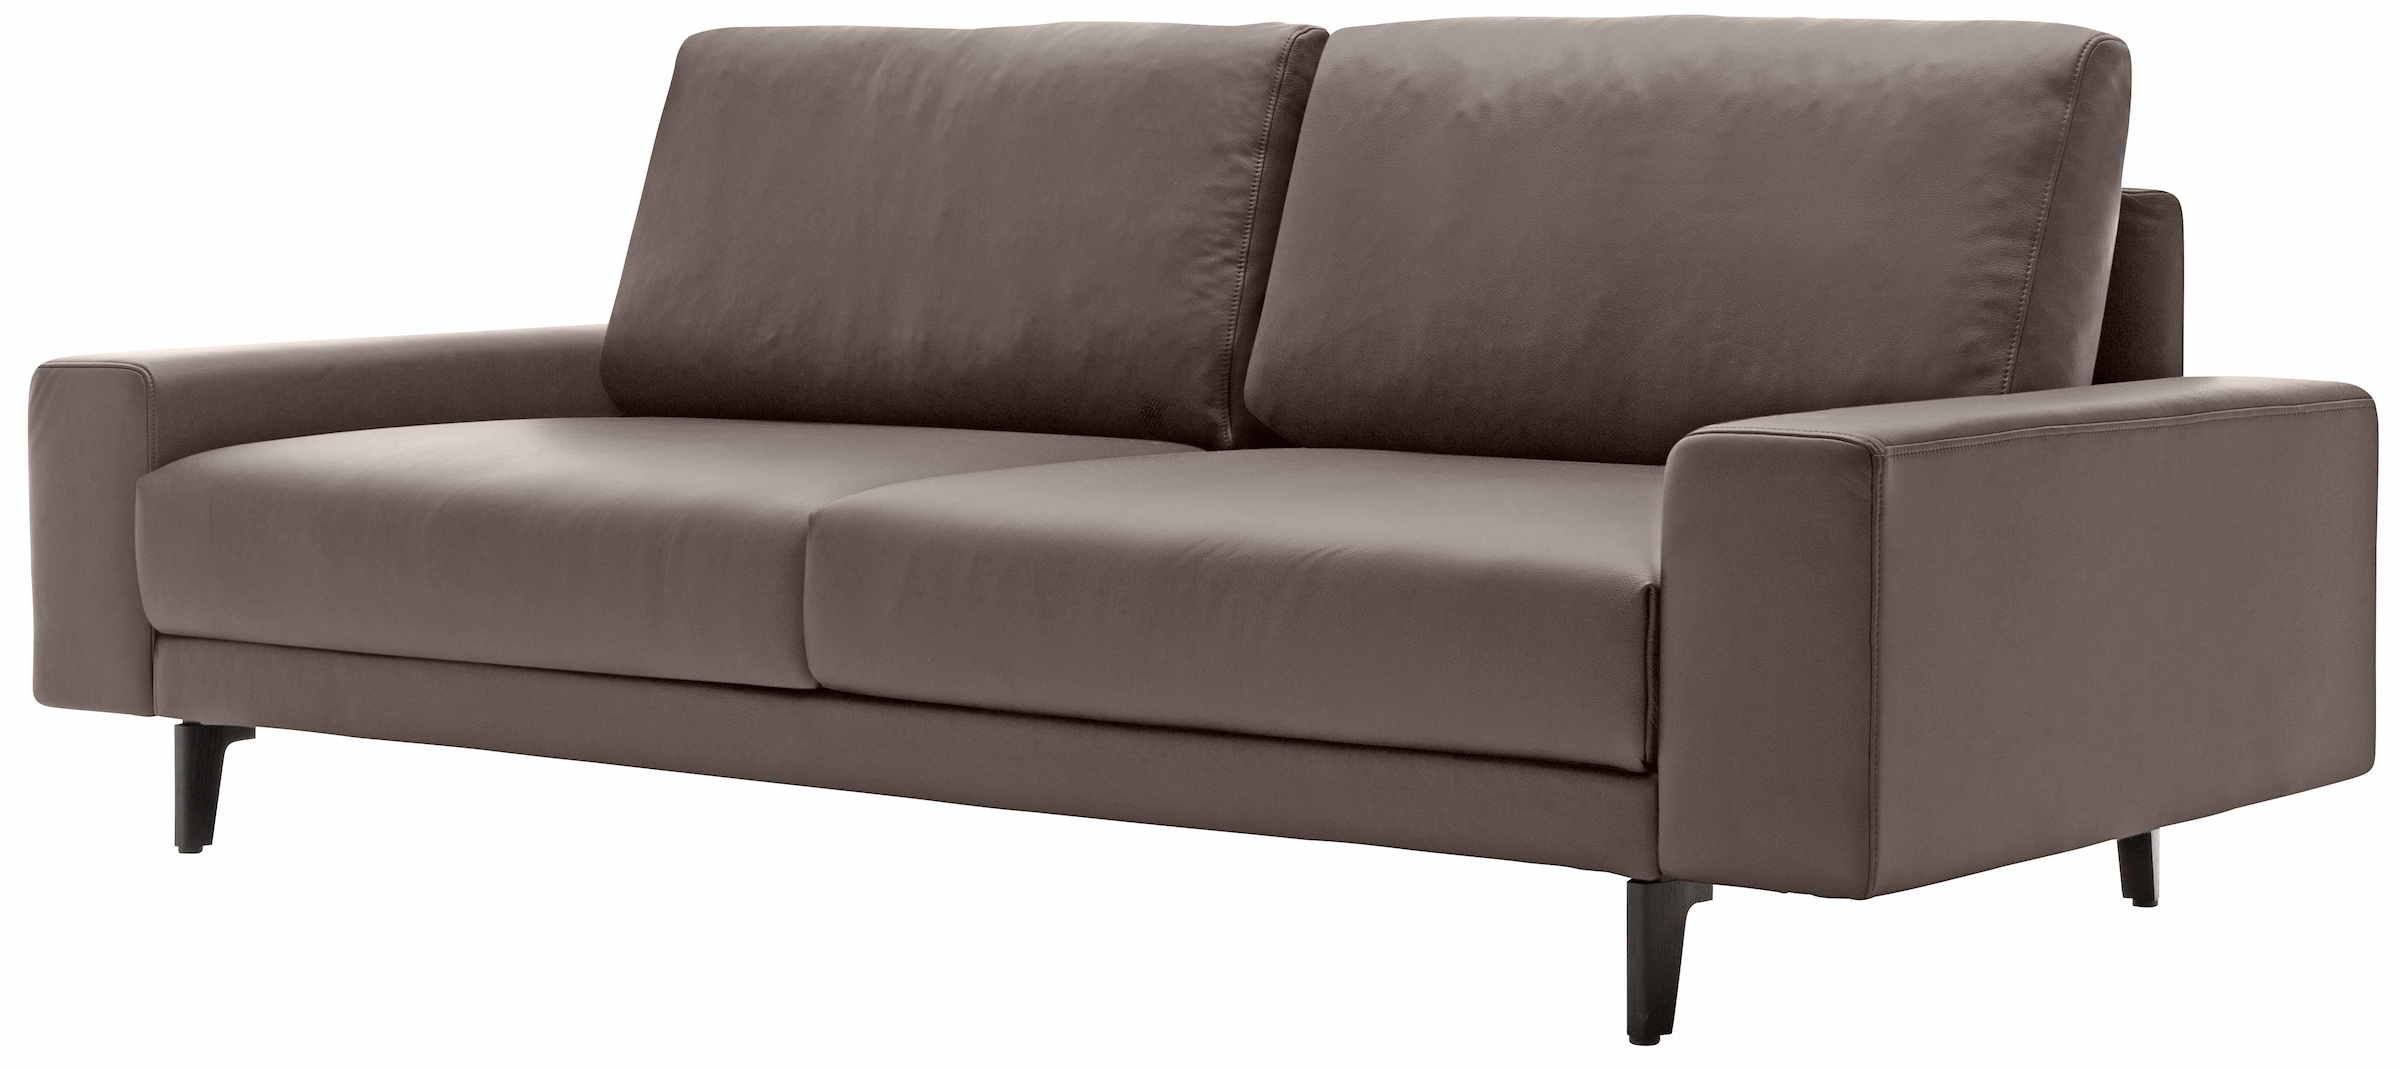 hülsta sofa | Breite BAUR 180 Alugussfüße breit Armlehne »hs.450«, umbragrau, in 2-Sitzer cm niedrig, kaufen